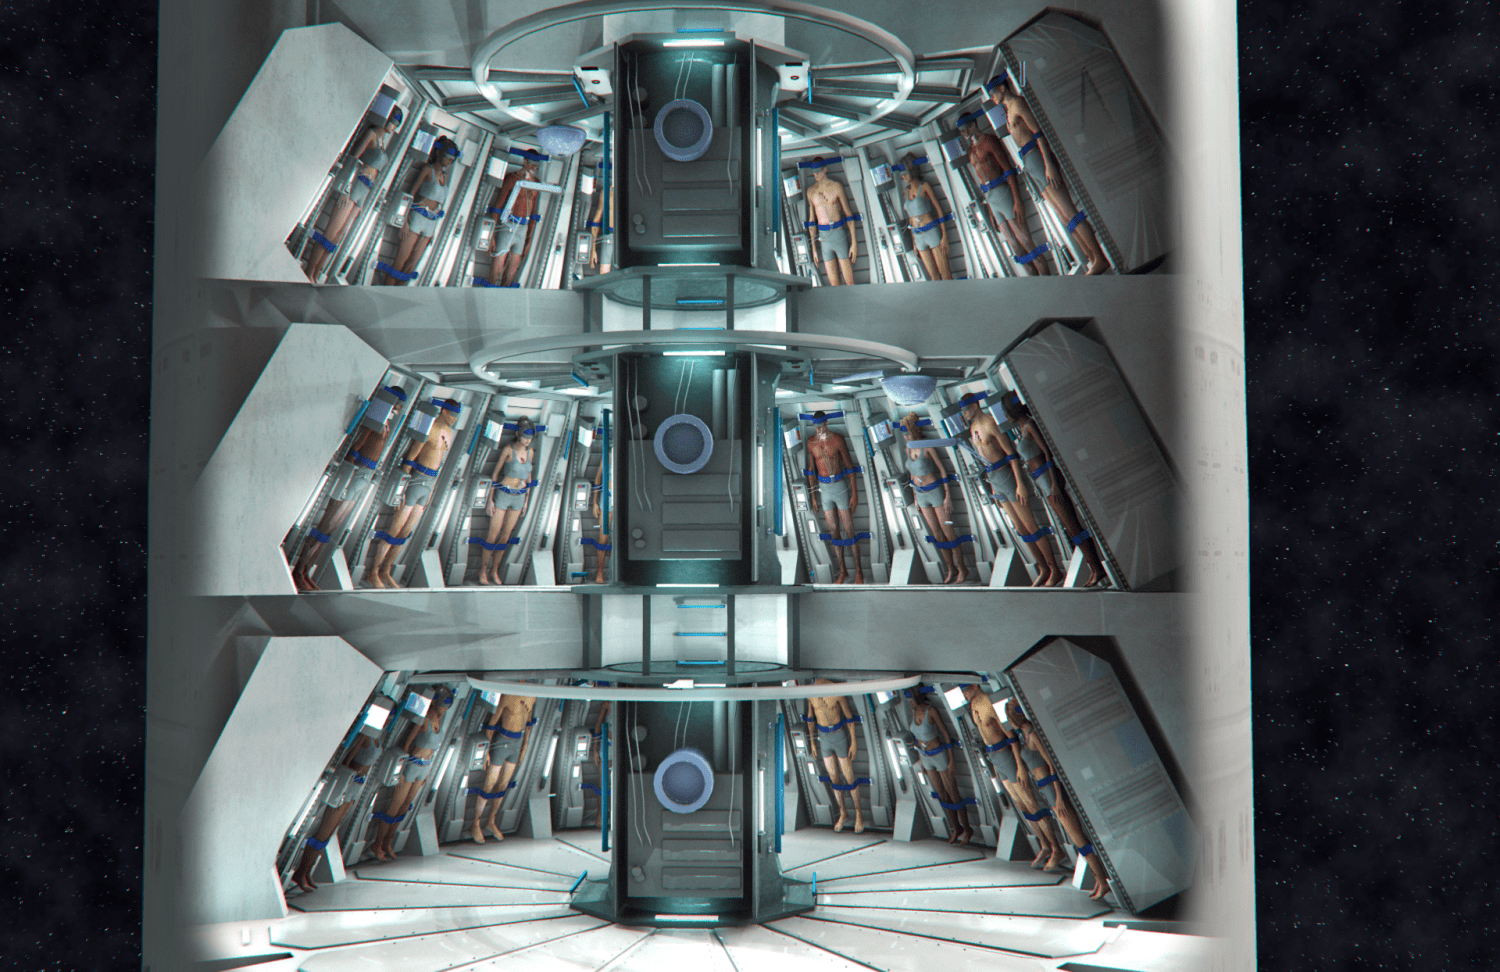 Cryosleep' May Open the Door to Deep Space. Here's How